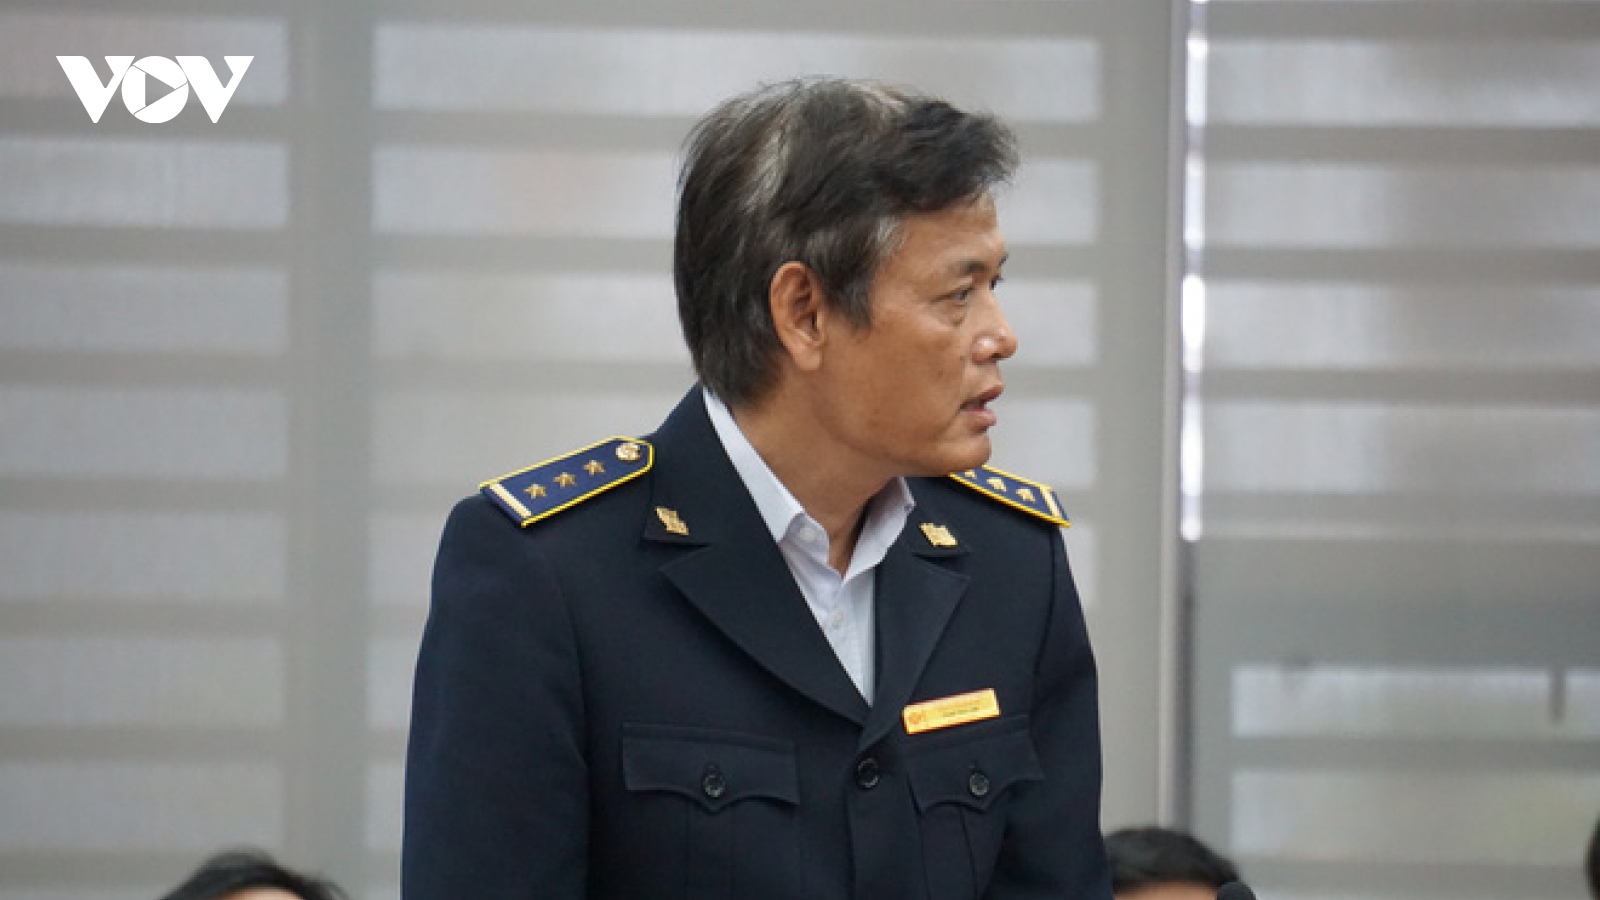 Phân công ông Phạm Trúc Lâm phụ trách CDC Đà Nẵng